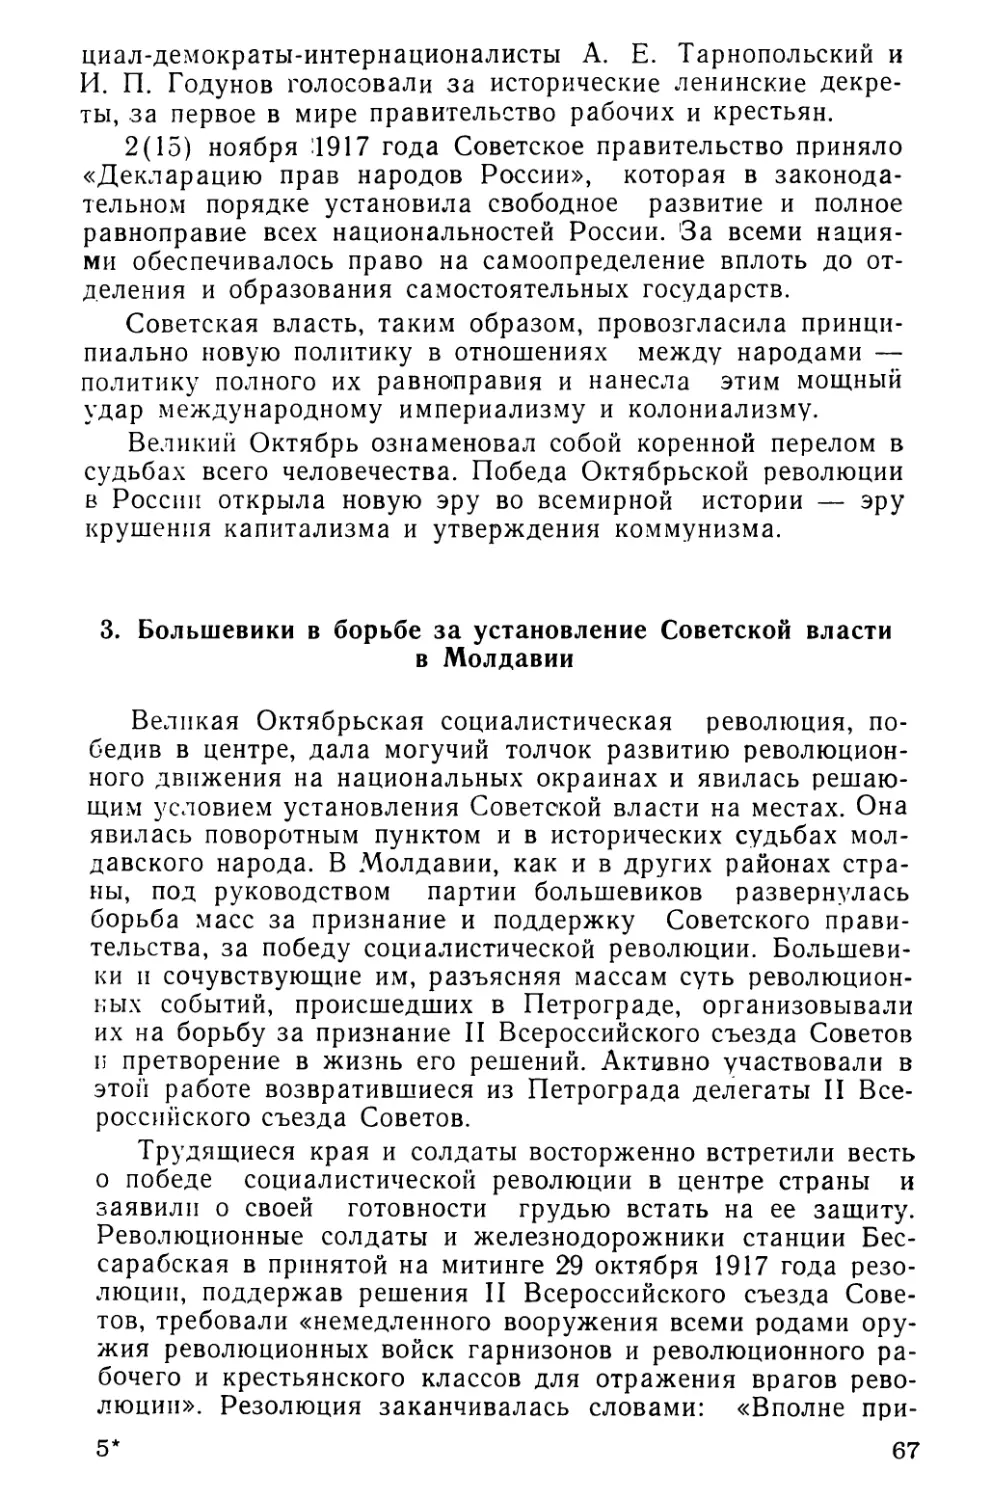 3. Большевики в борьбе за установление Советской власти в Молдавии